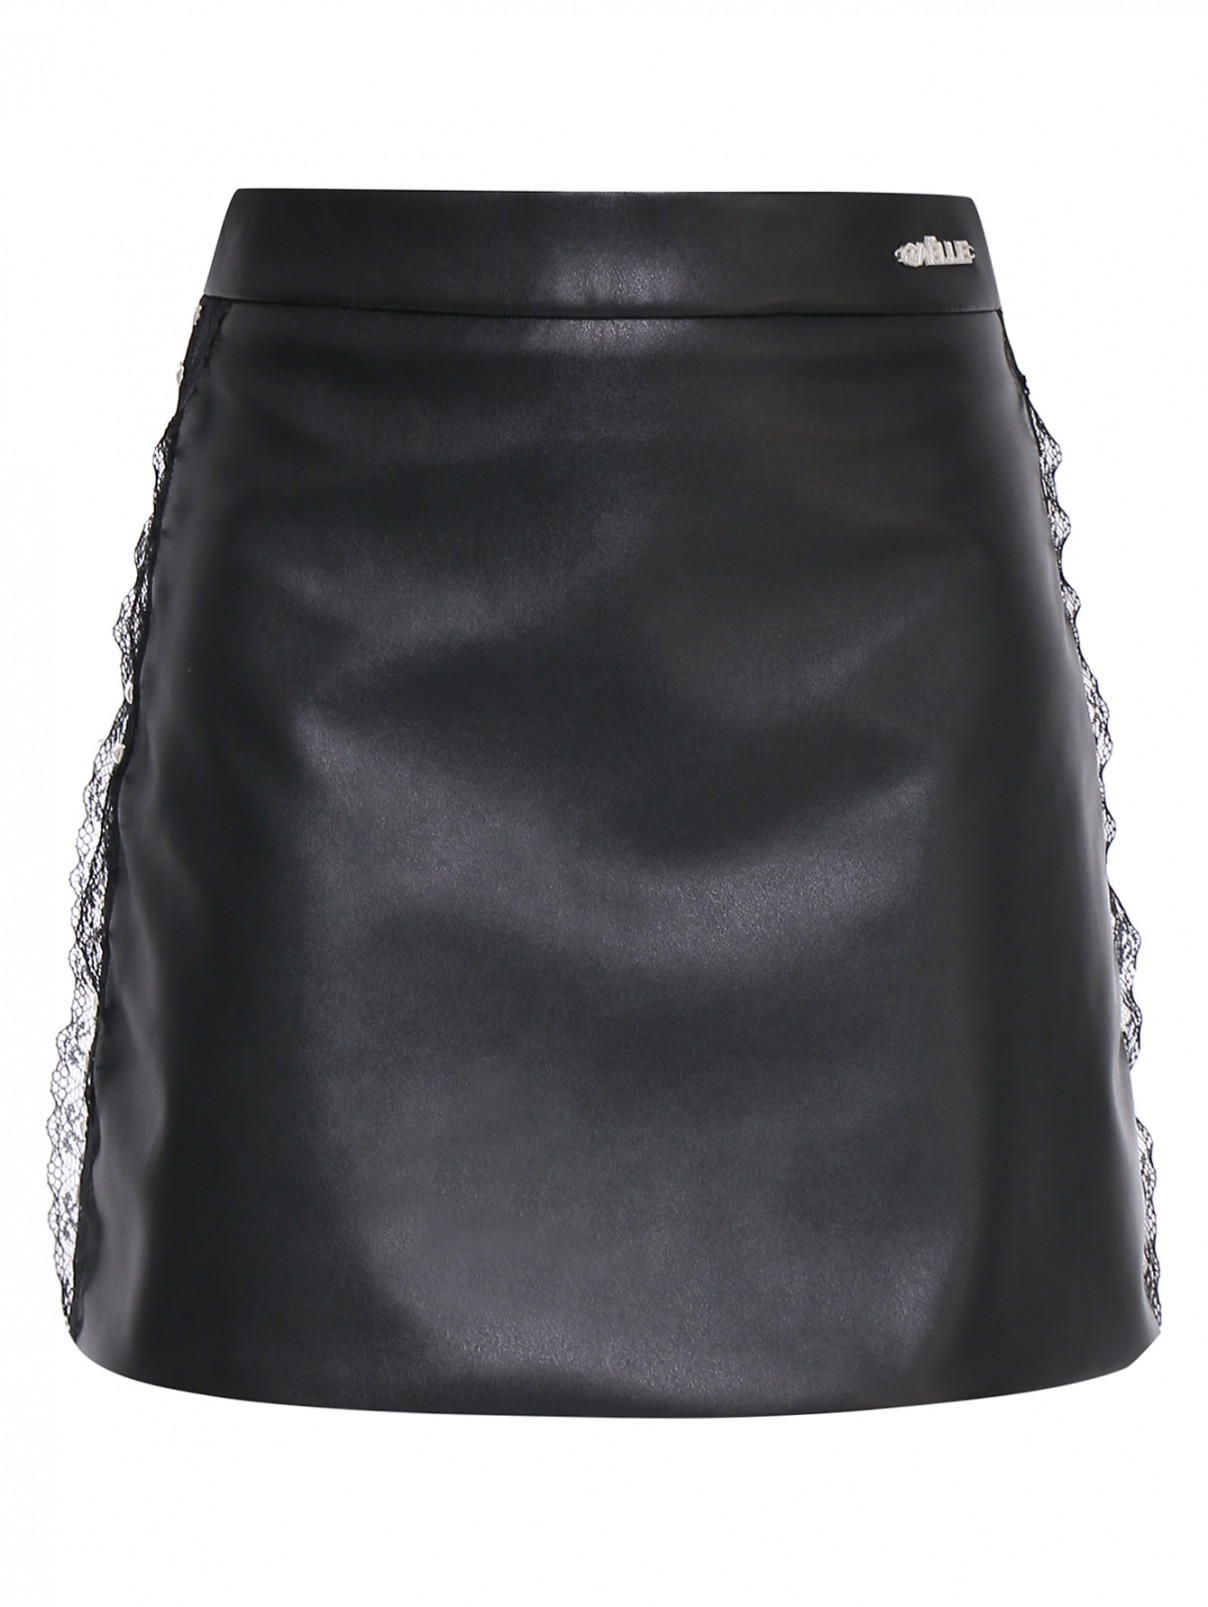 Мини-юбка с кружевом и металлическим декором Gaelle  –  Общий вид  – Цвет:  Черный